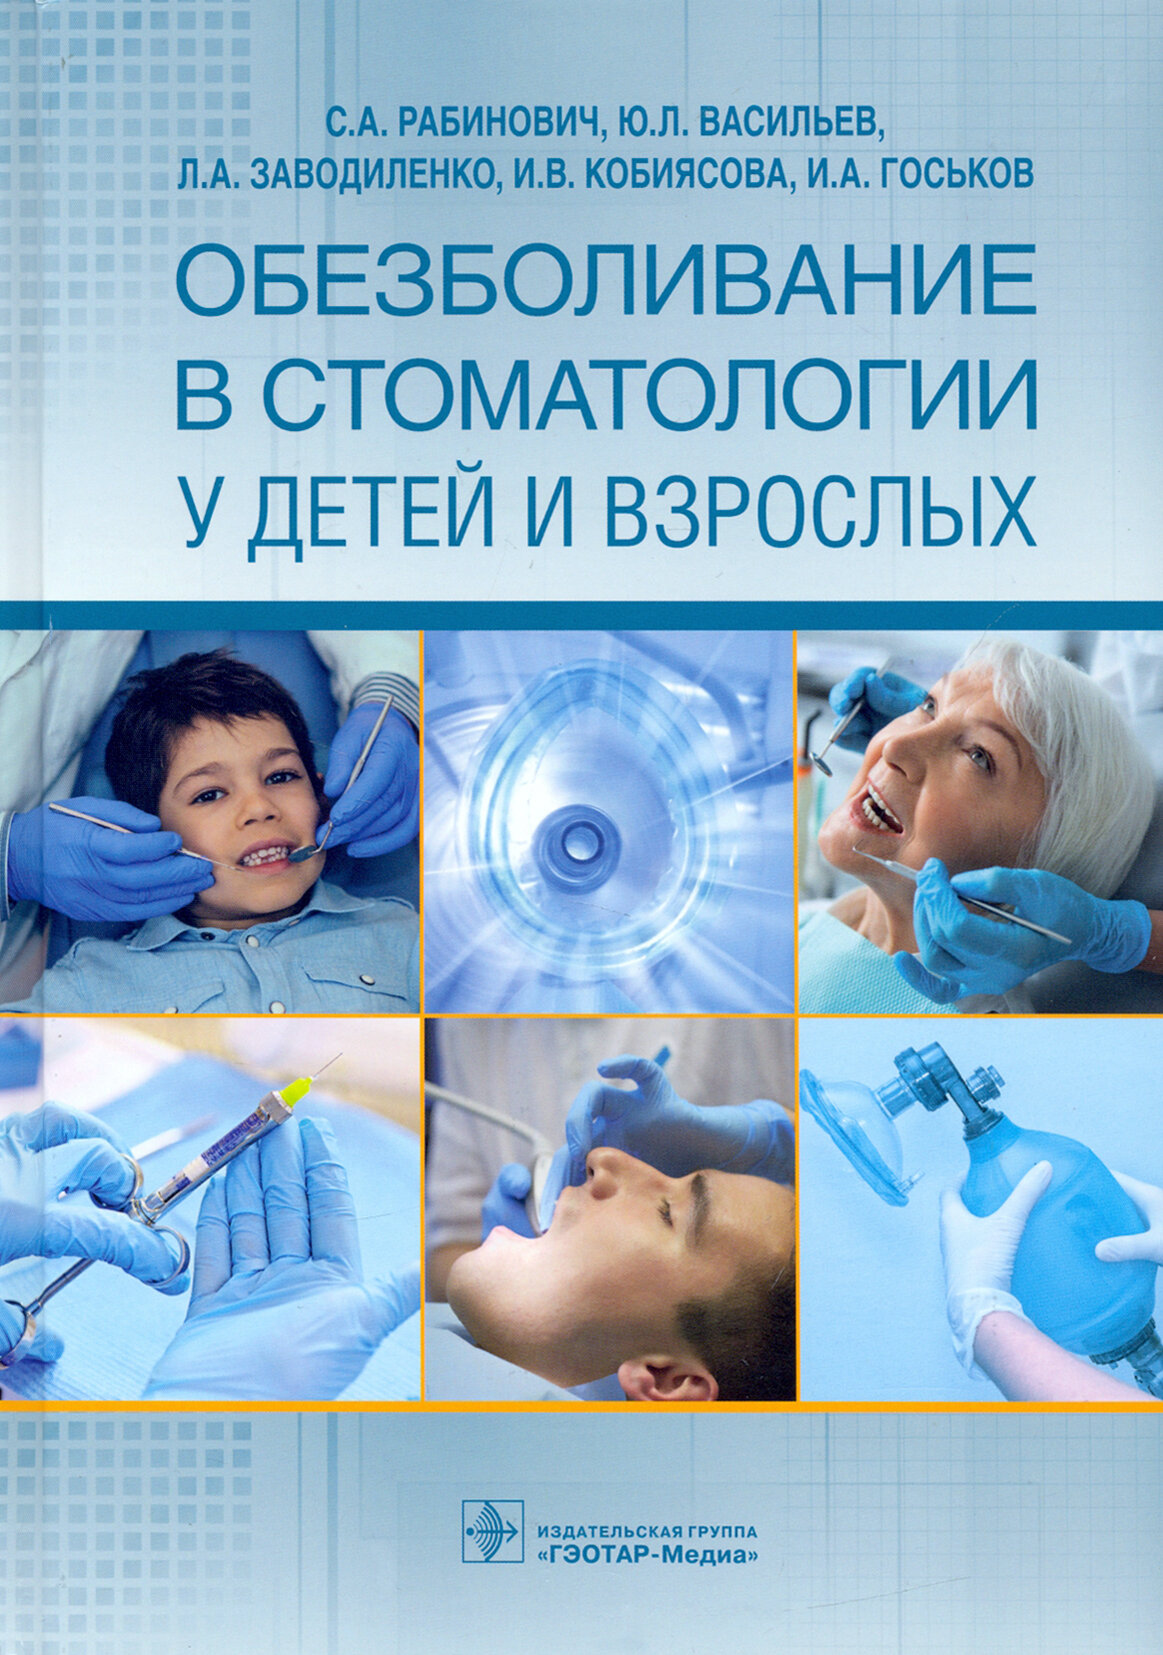 Обезболивание в стоматологии у детей и взрослых - фото №4